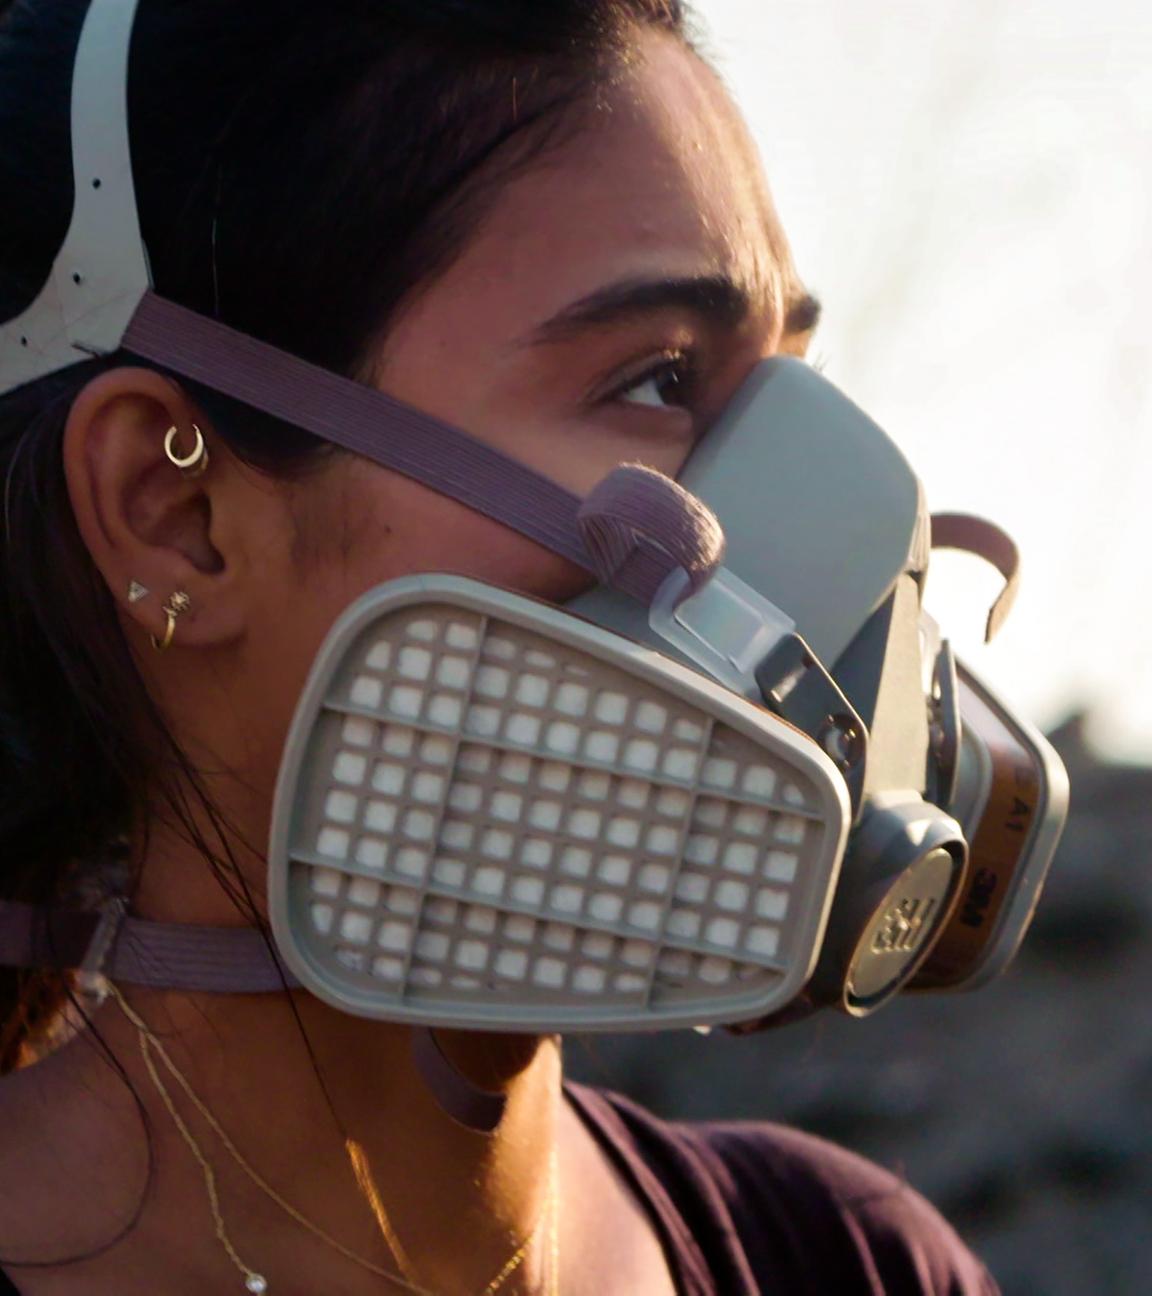 Porträtaufnahme der Journalistin Nelufar Hedayat: Sie hat die Haare zum Zopf gebunden trägt eine Atemschutzmaske und schaut zur Seite.